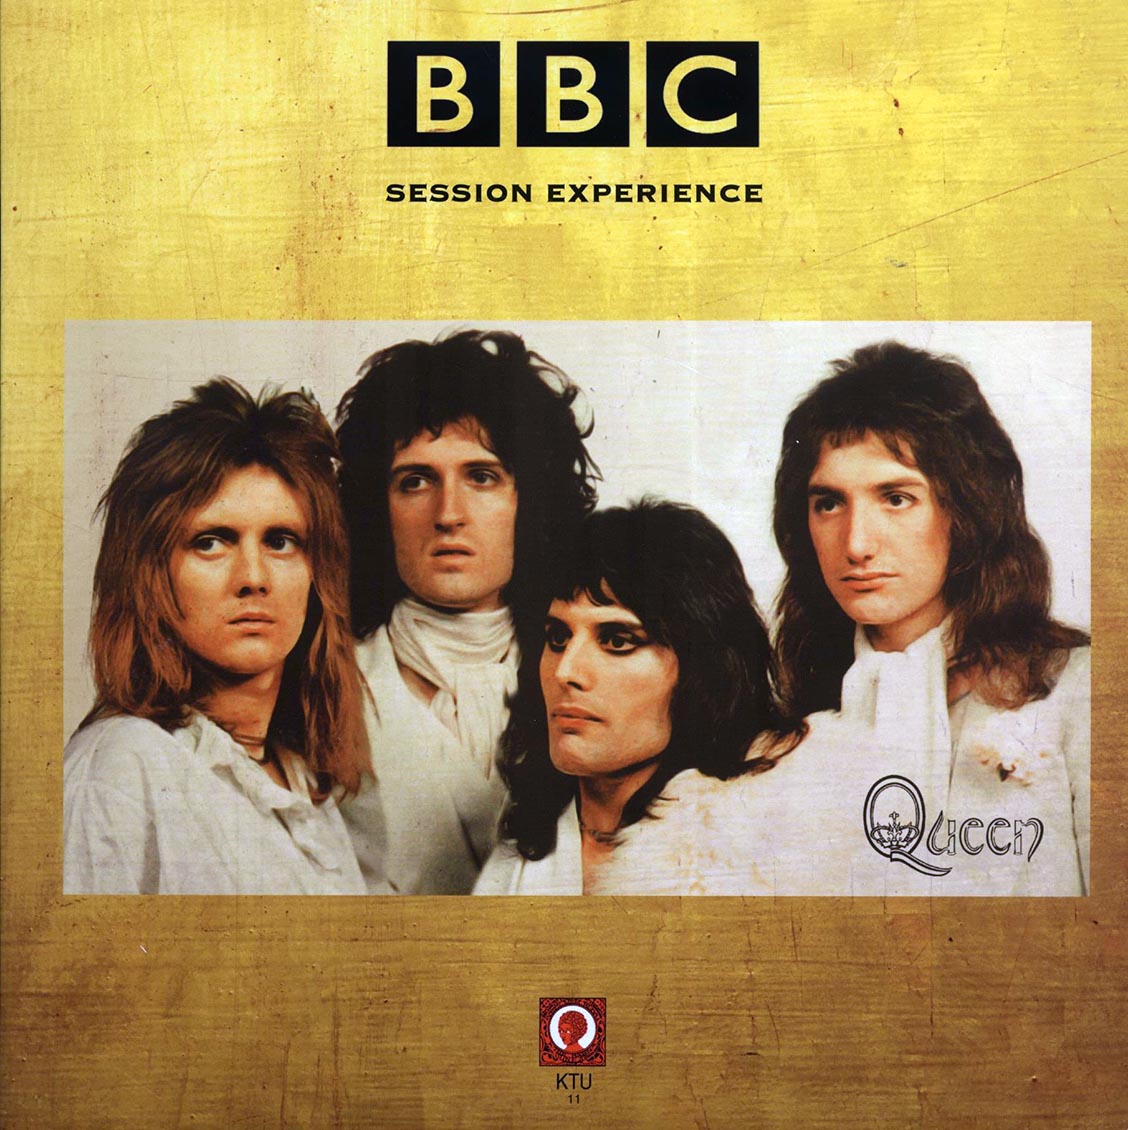 Queen - Session Experience: Goldon Green Hippodrome, London, September 13, 1973 - Vinyl LP